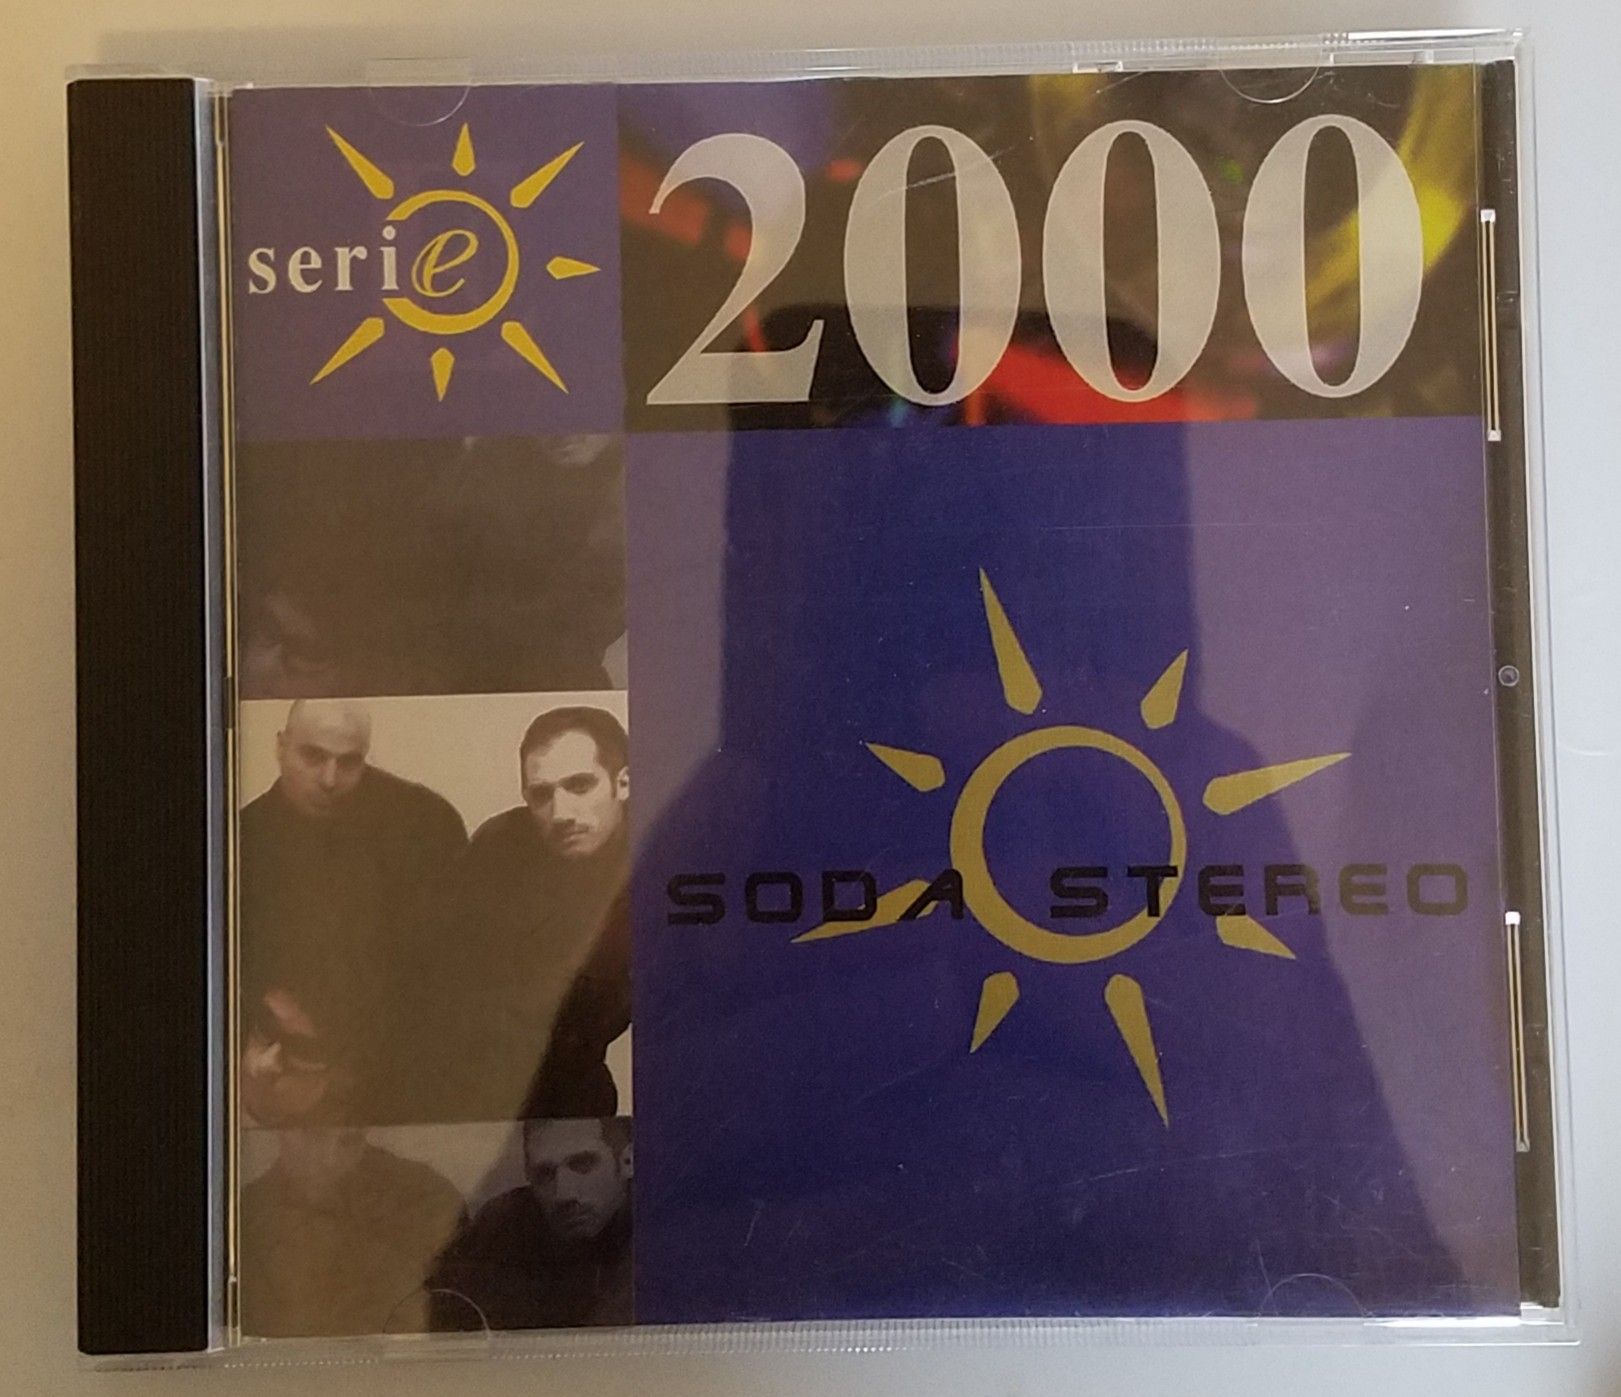 Soda stereo serie 2000 cd